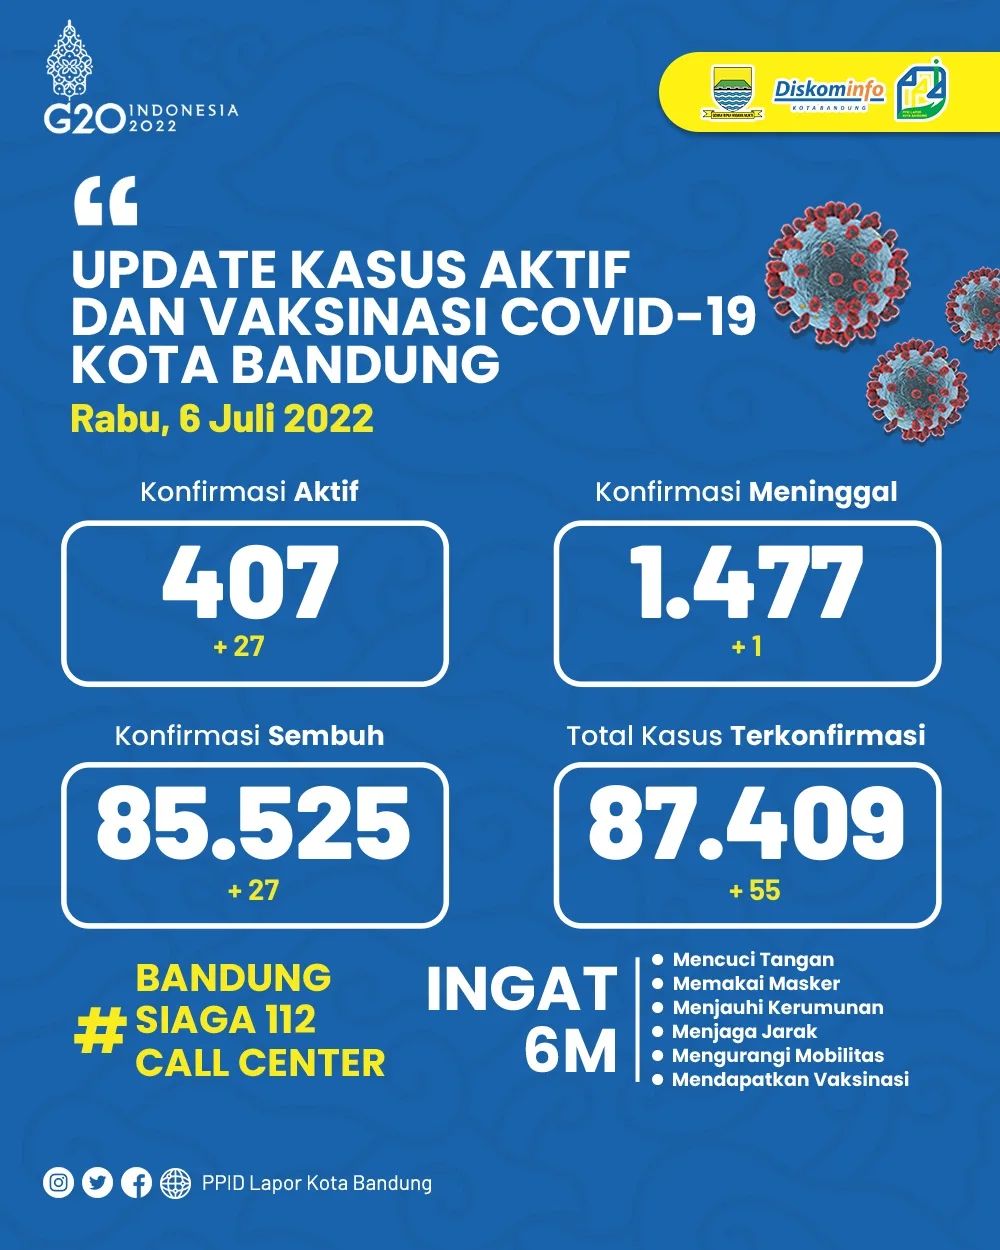 UPDATE STATISTIK COVID-19 DI KOTA BANDUNG PER TANGGAL 6 JULI 2022